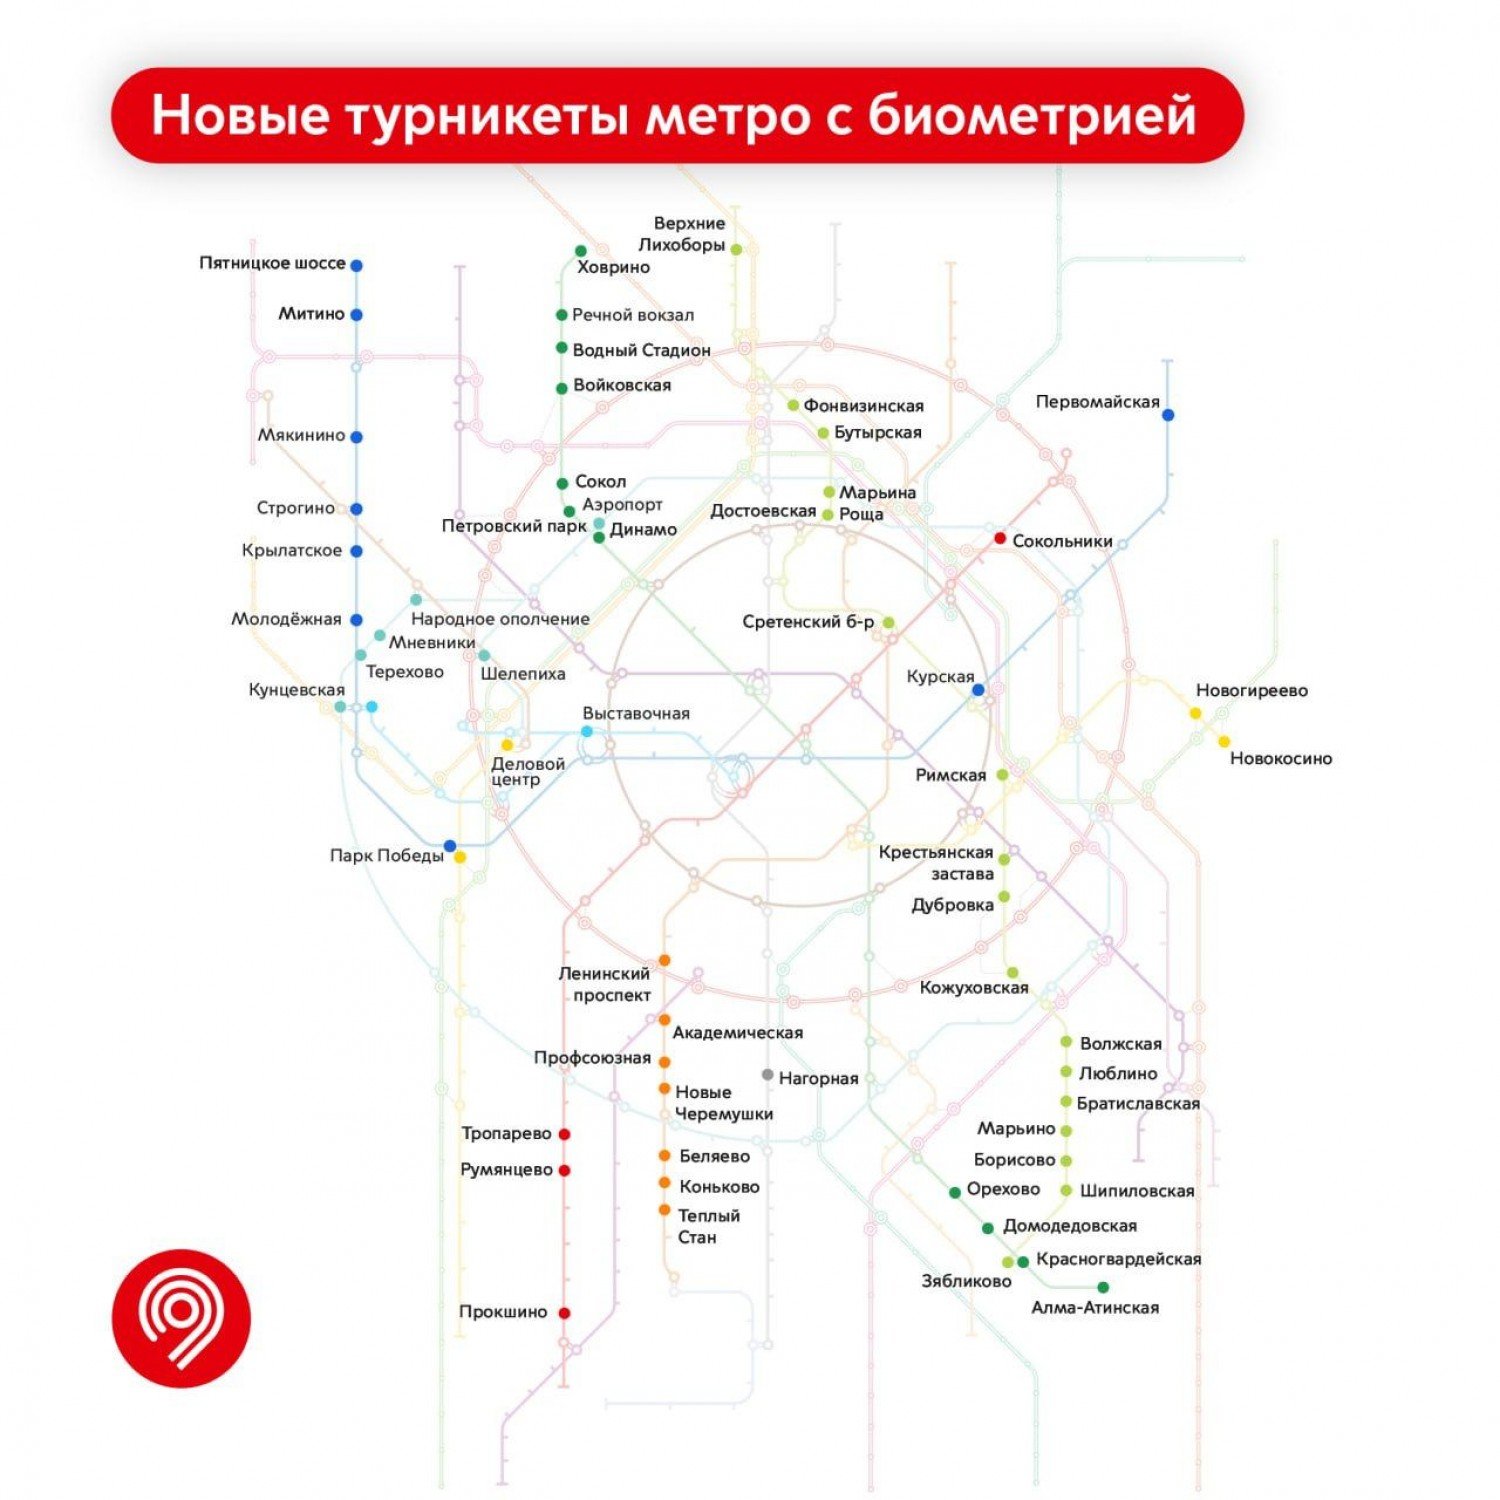 карта метро москвы 2023